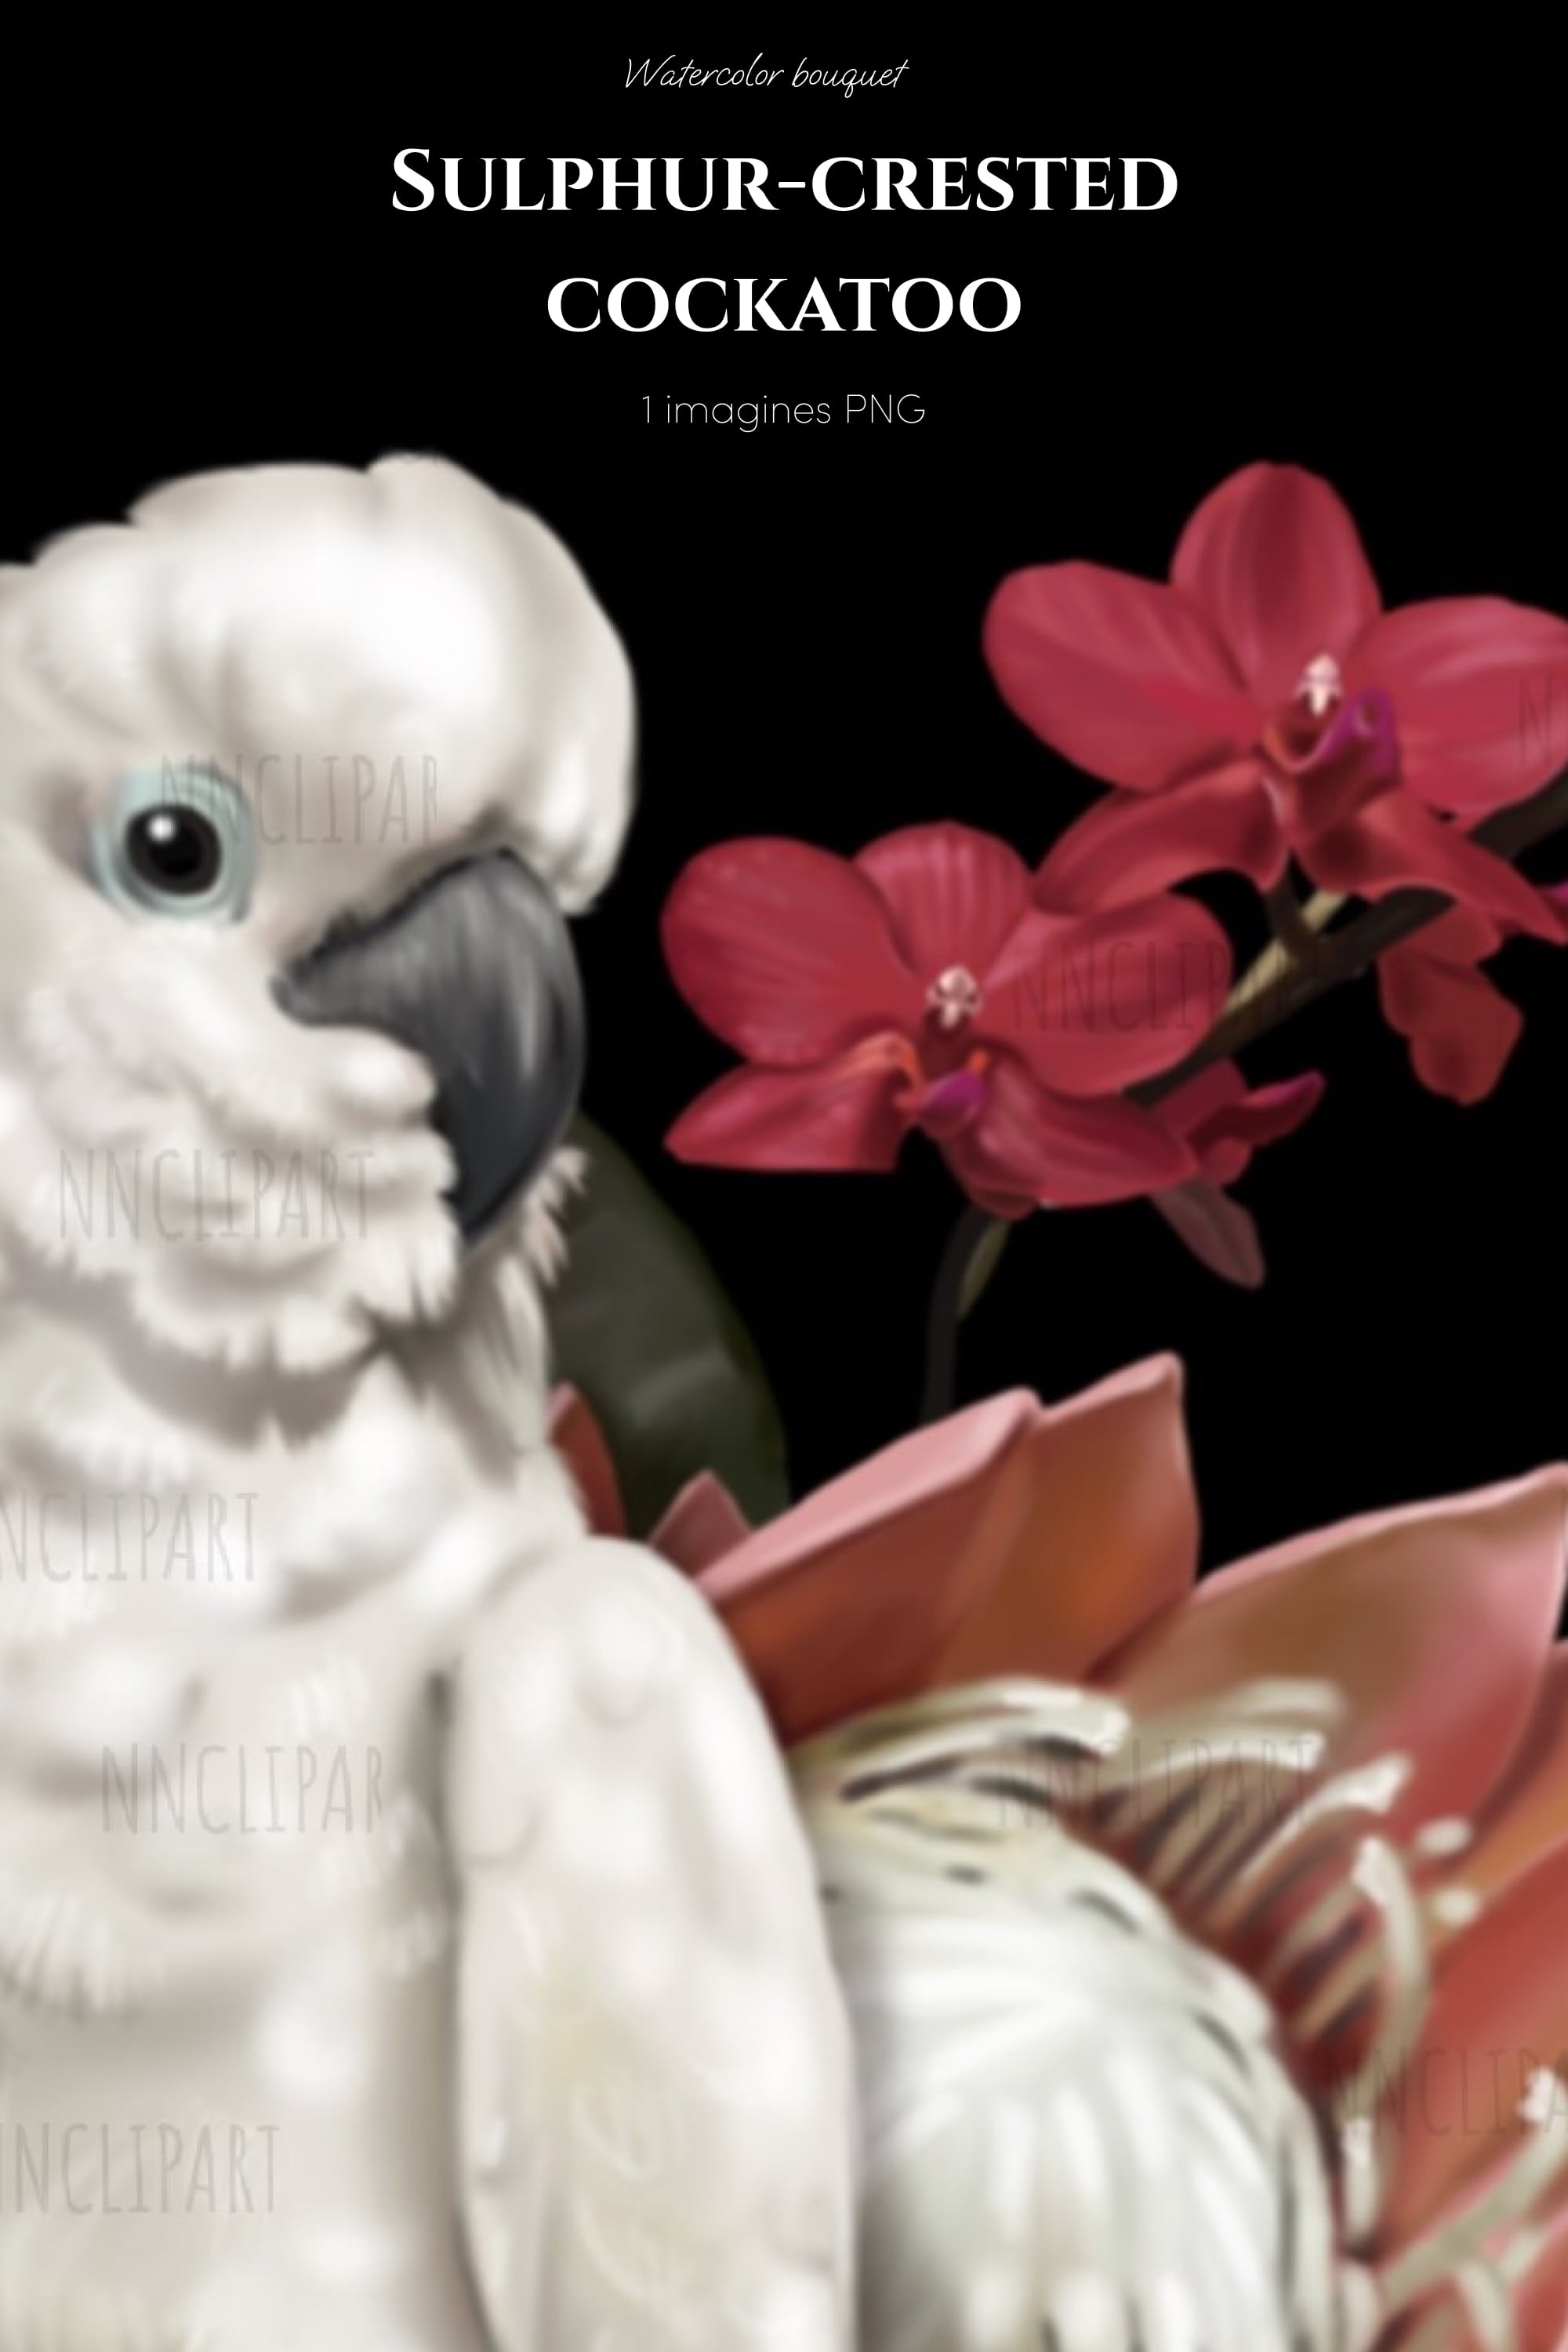 sulphur crested cockatoo parrot watercolor bouquet clipart pinterest min